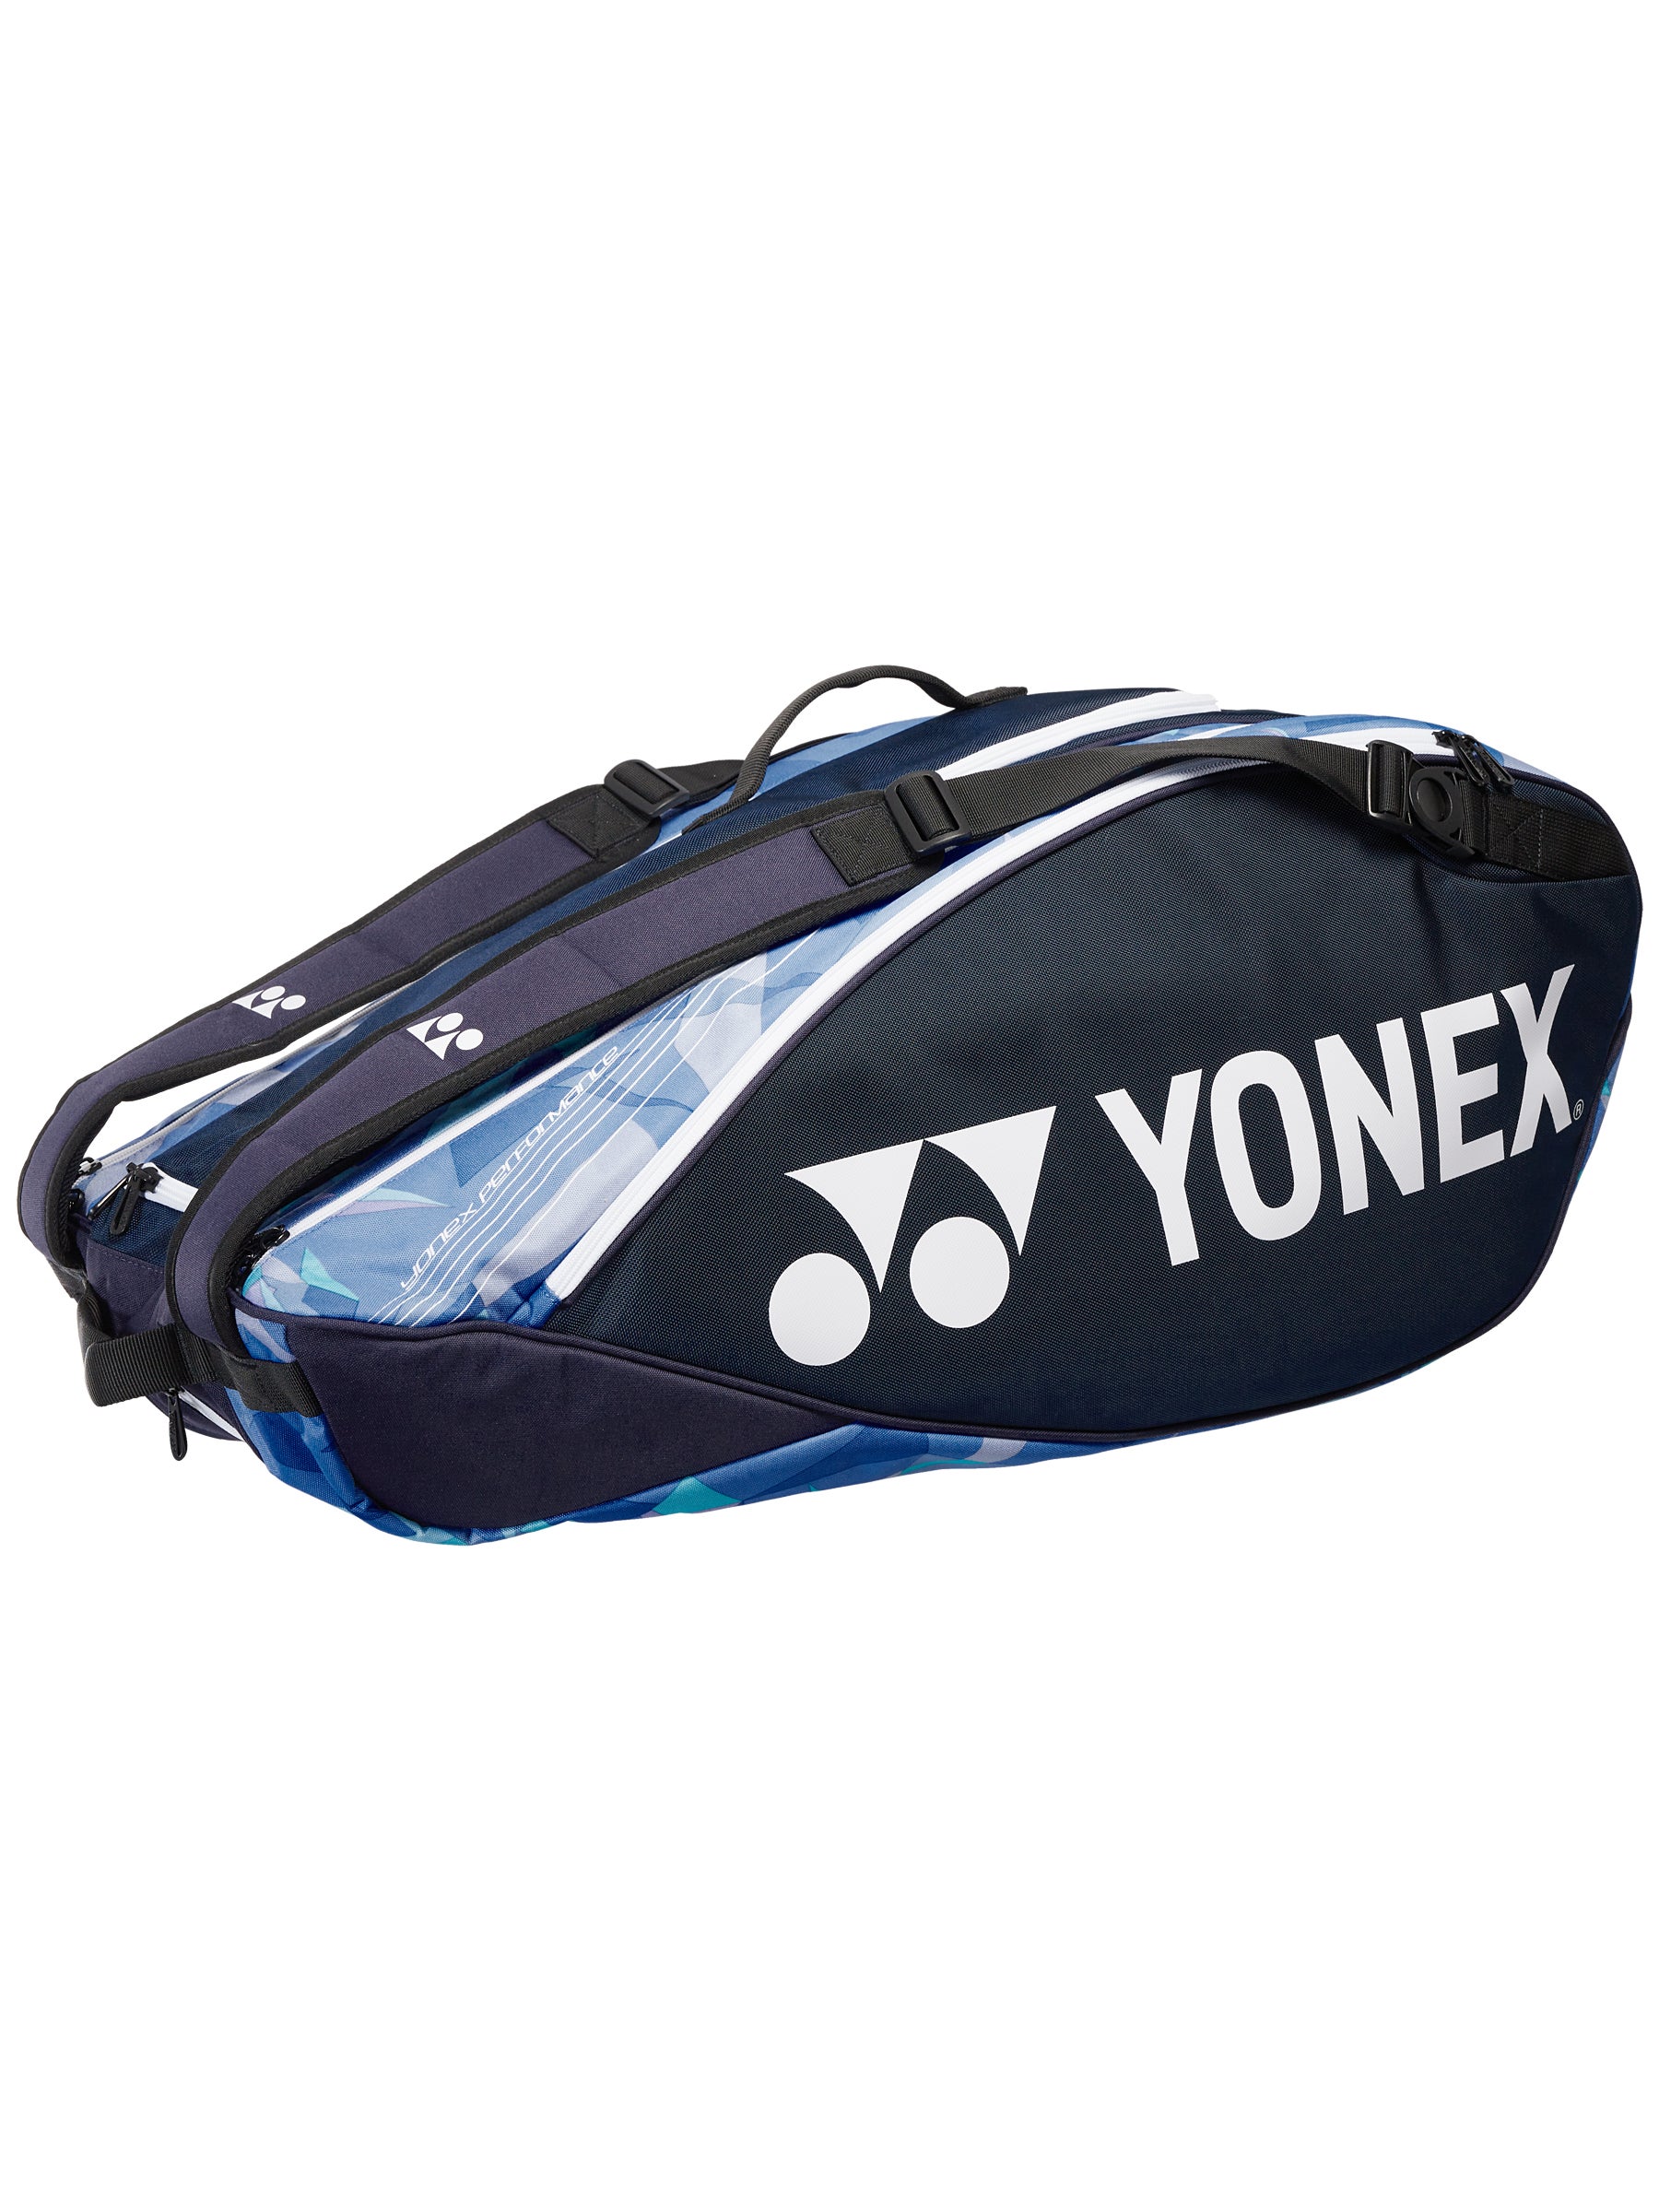 Yonex Pro 9 Racquet Bag Authorized Dealer w/ Warranty Black/Pink 